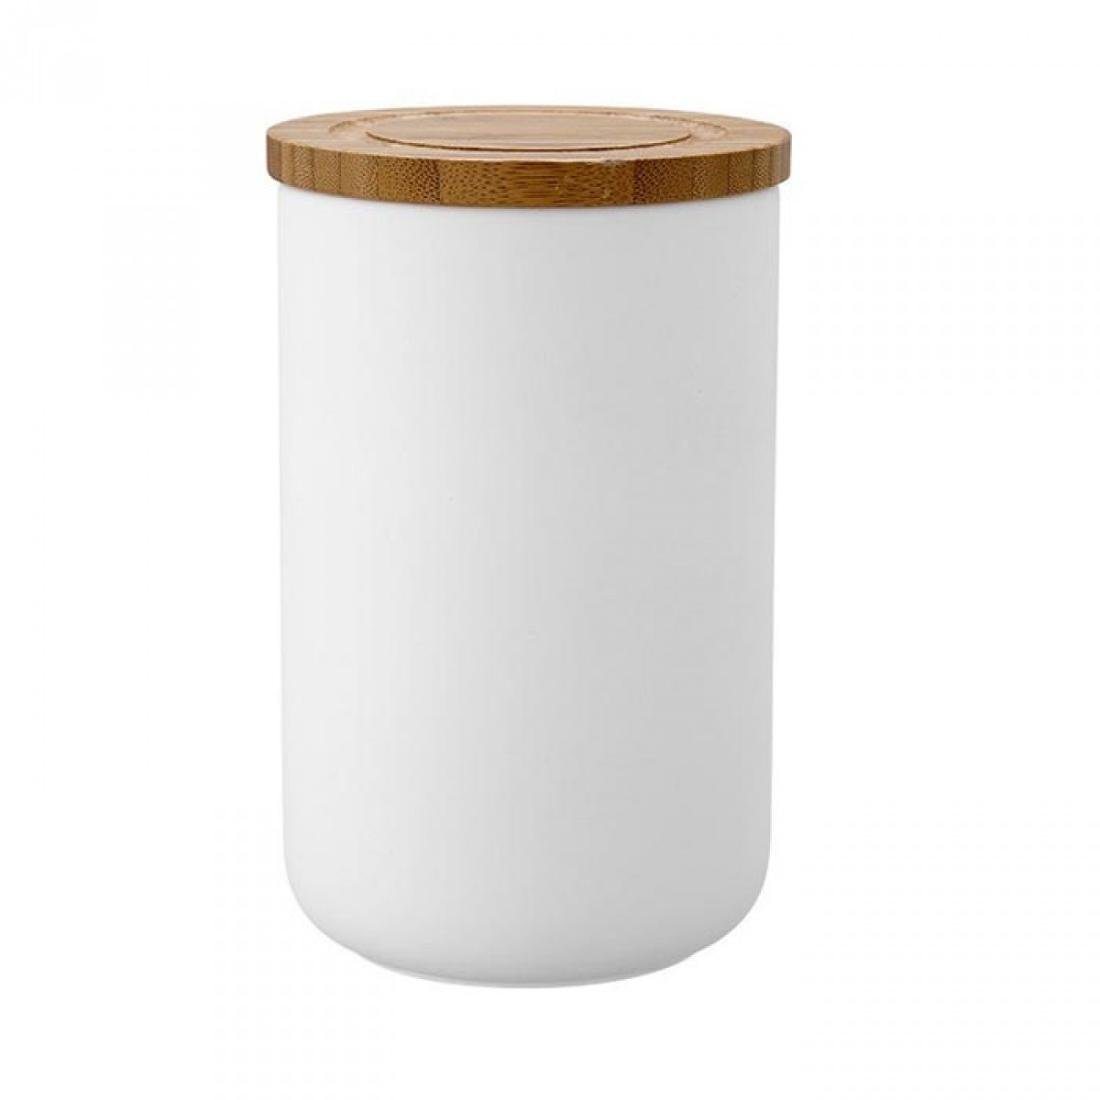 Zdjęcia - Pojemnik na żywność Pojemnik Ceramiczny LADELLE Stak Soft Matt, biały, 10x17 cm